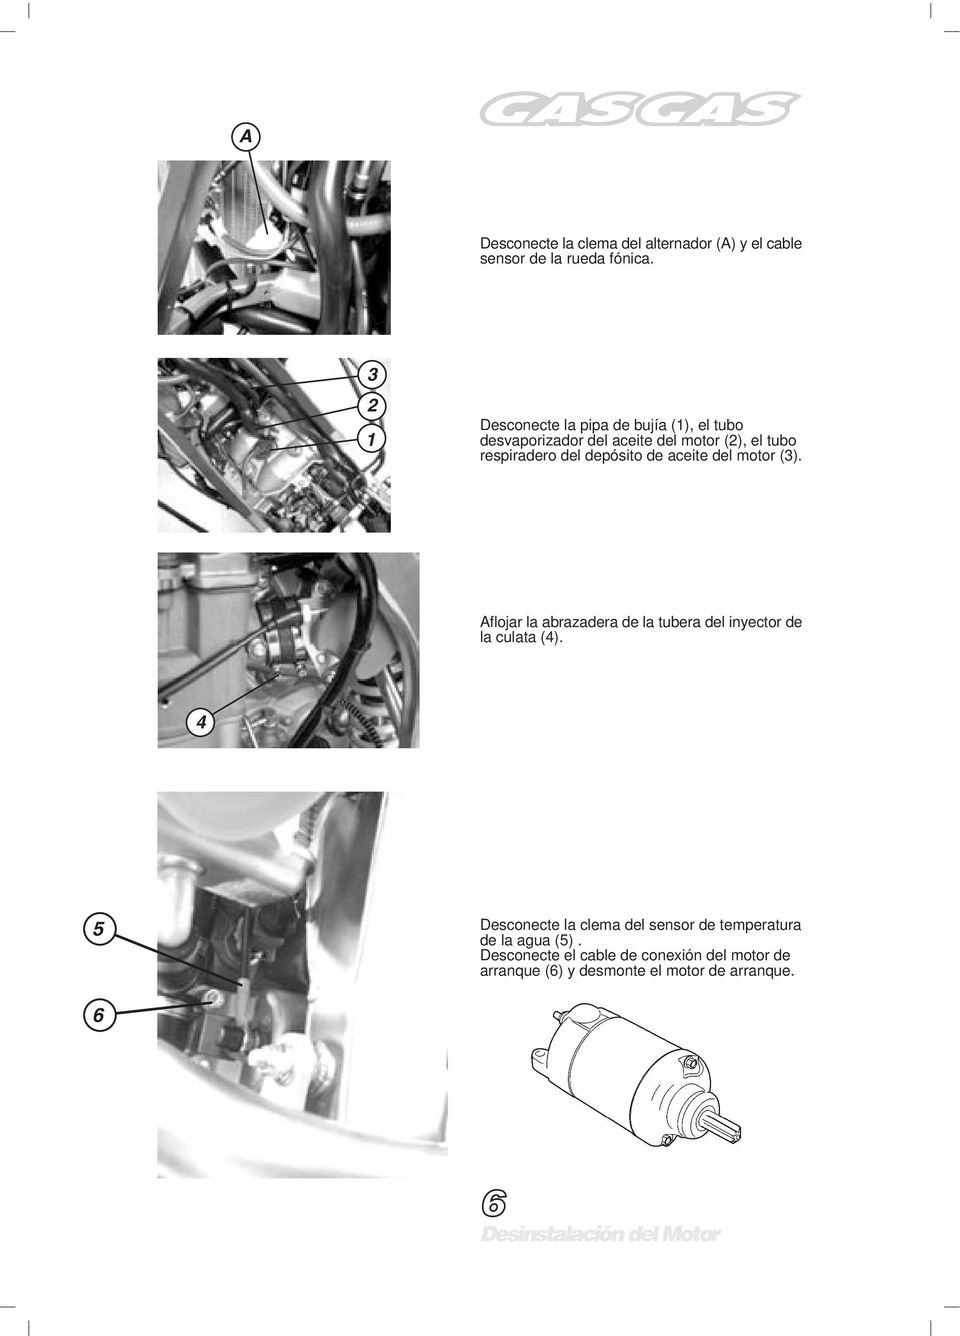 depósito de aceite del motor (3). Aflojar la abrazadera de la tubera del inyector de la culata (4).